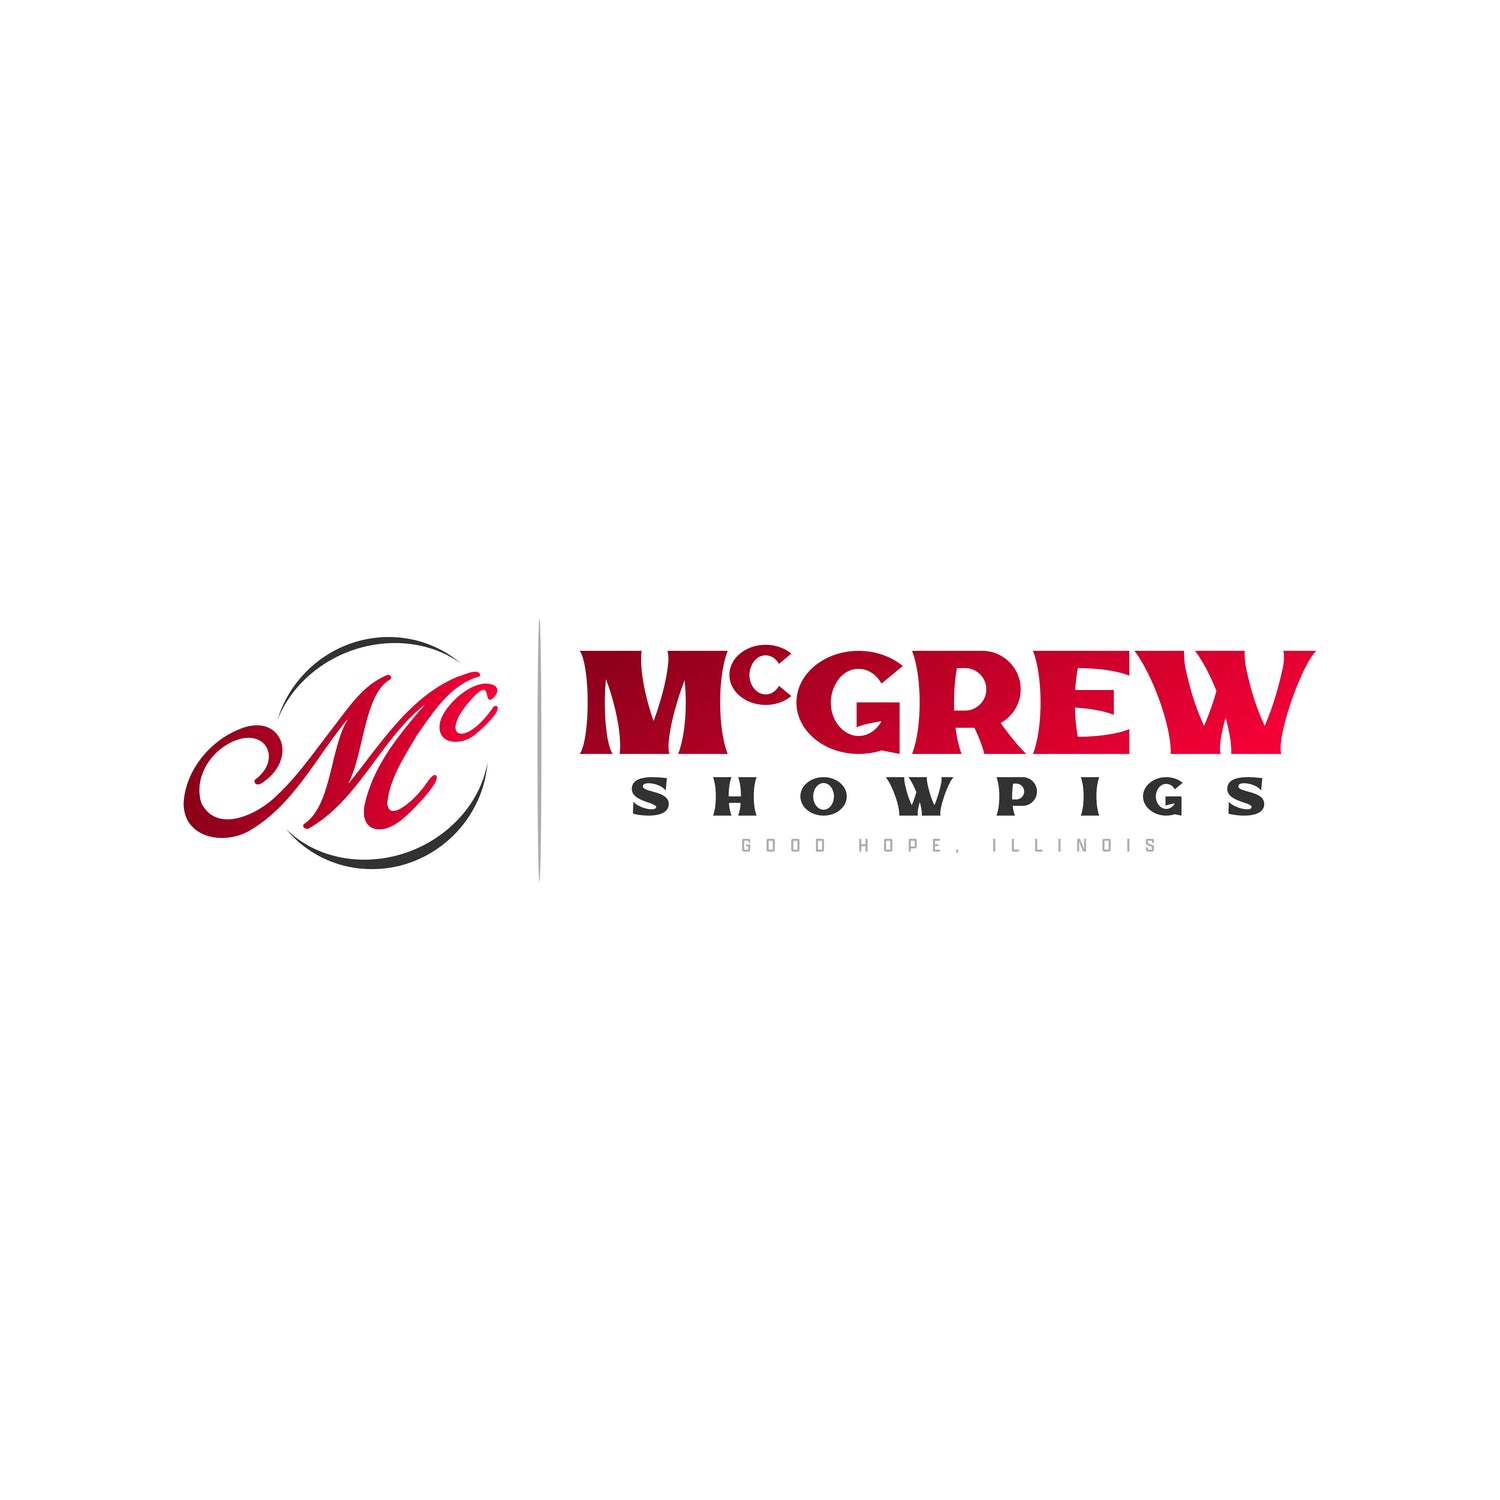 McGrew Showpigs PRE-ORDER Apparel Store